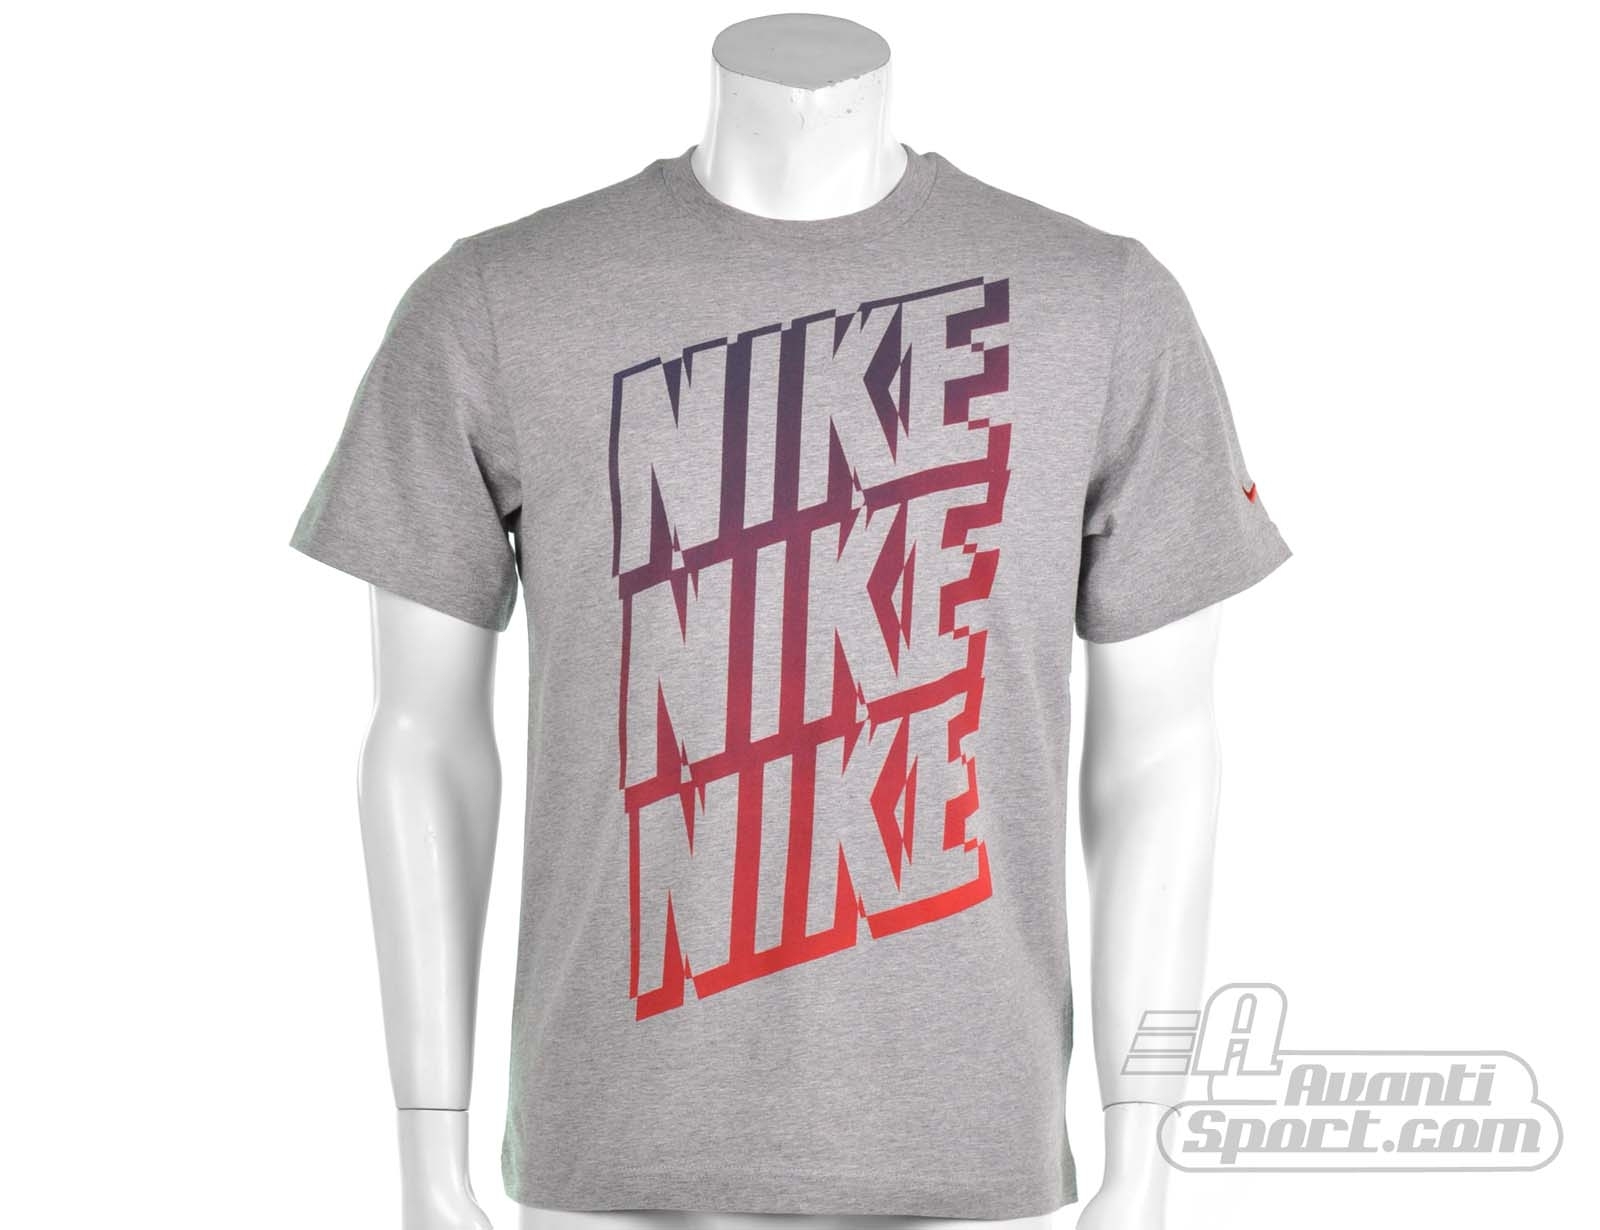 Avantisport - Nike - T-shirt Nike Logo - Herenshirts